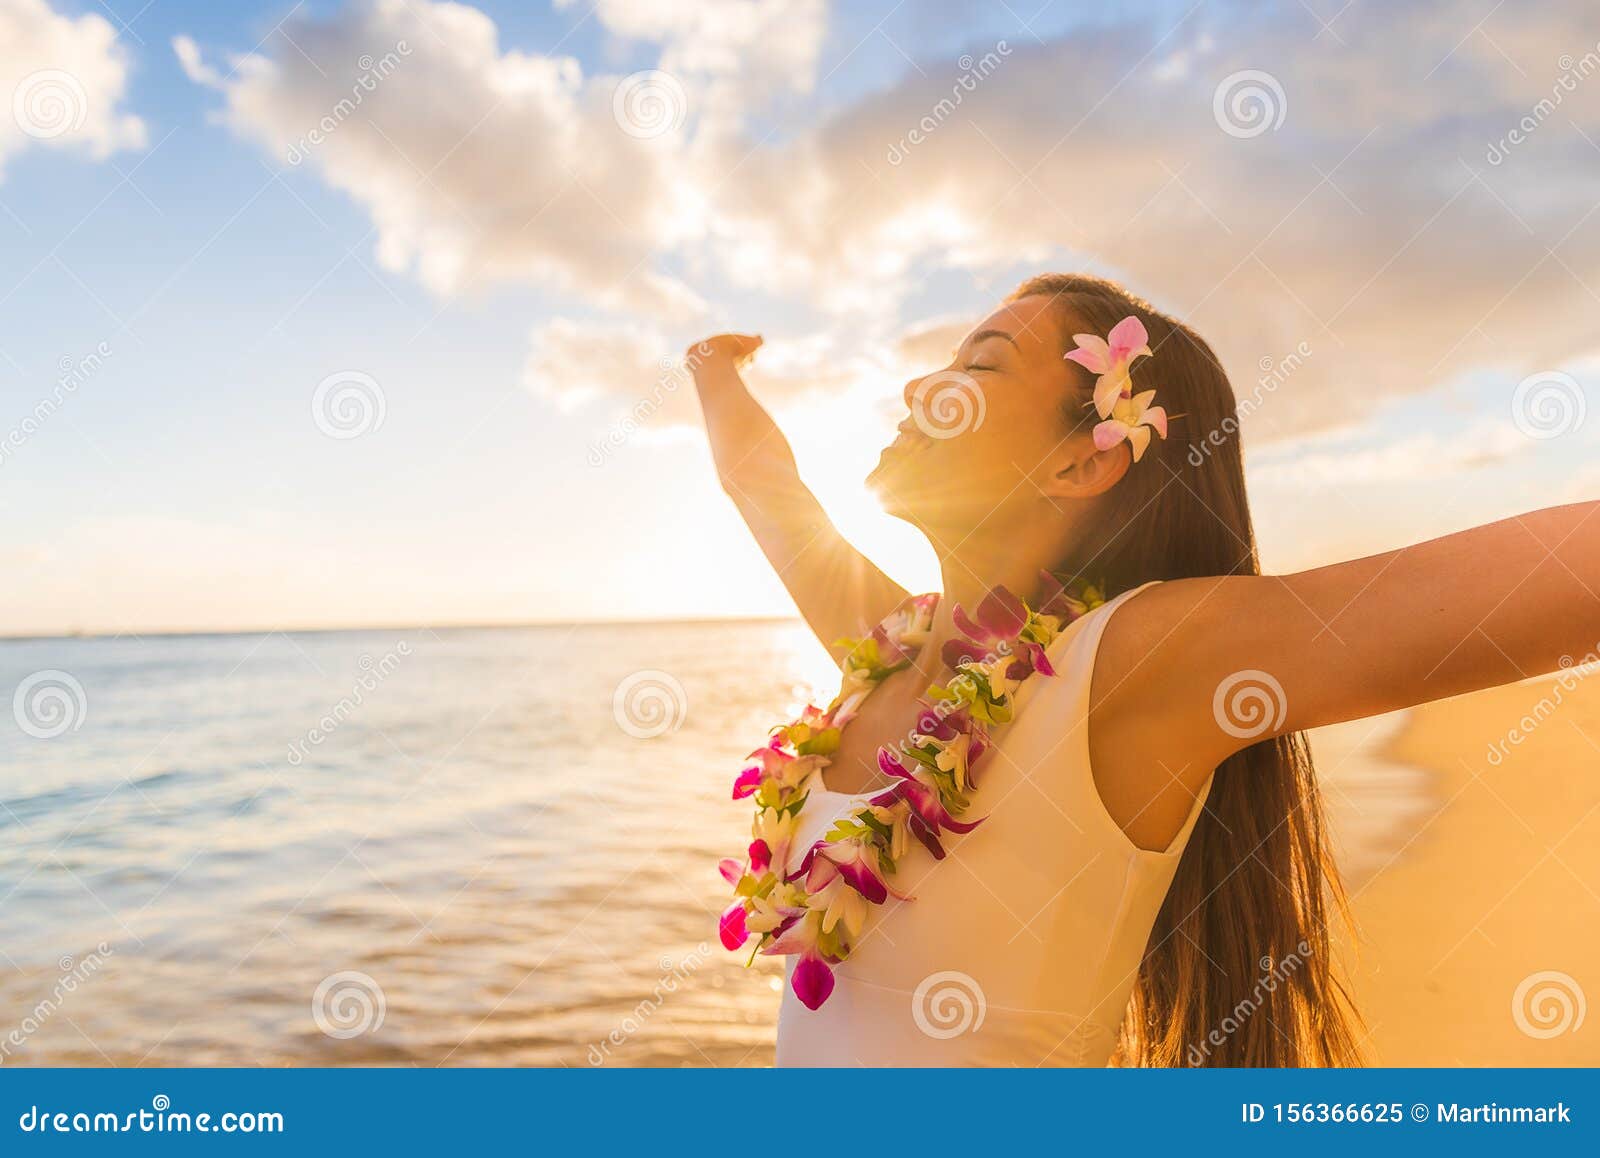 Lot de 24 Colliers Hawaiens rose bleu violet HK-23 collier hawaien Hawaï hawaii Hula fleur pétale ambiance tropique déguisement fête beach party été plage printemps accessoire mariage anniversaire